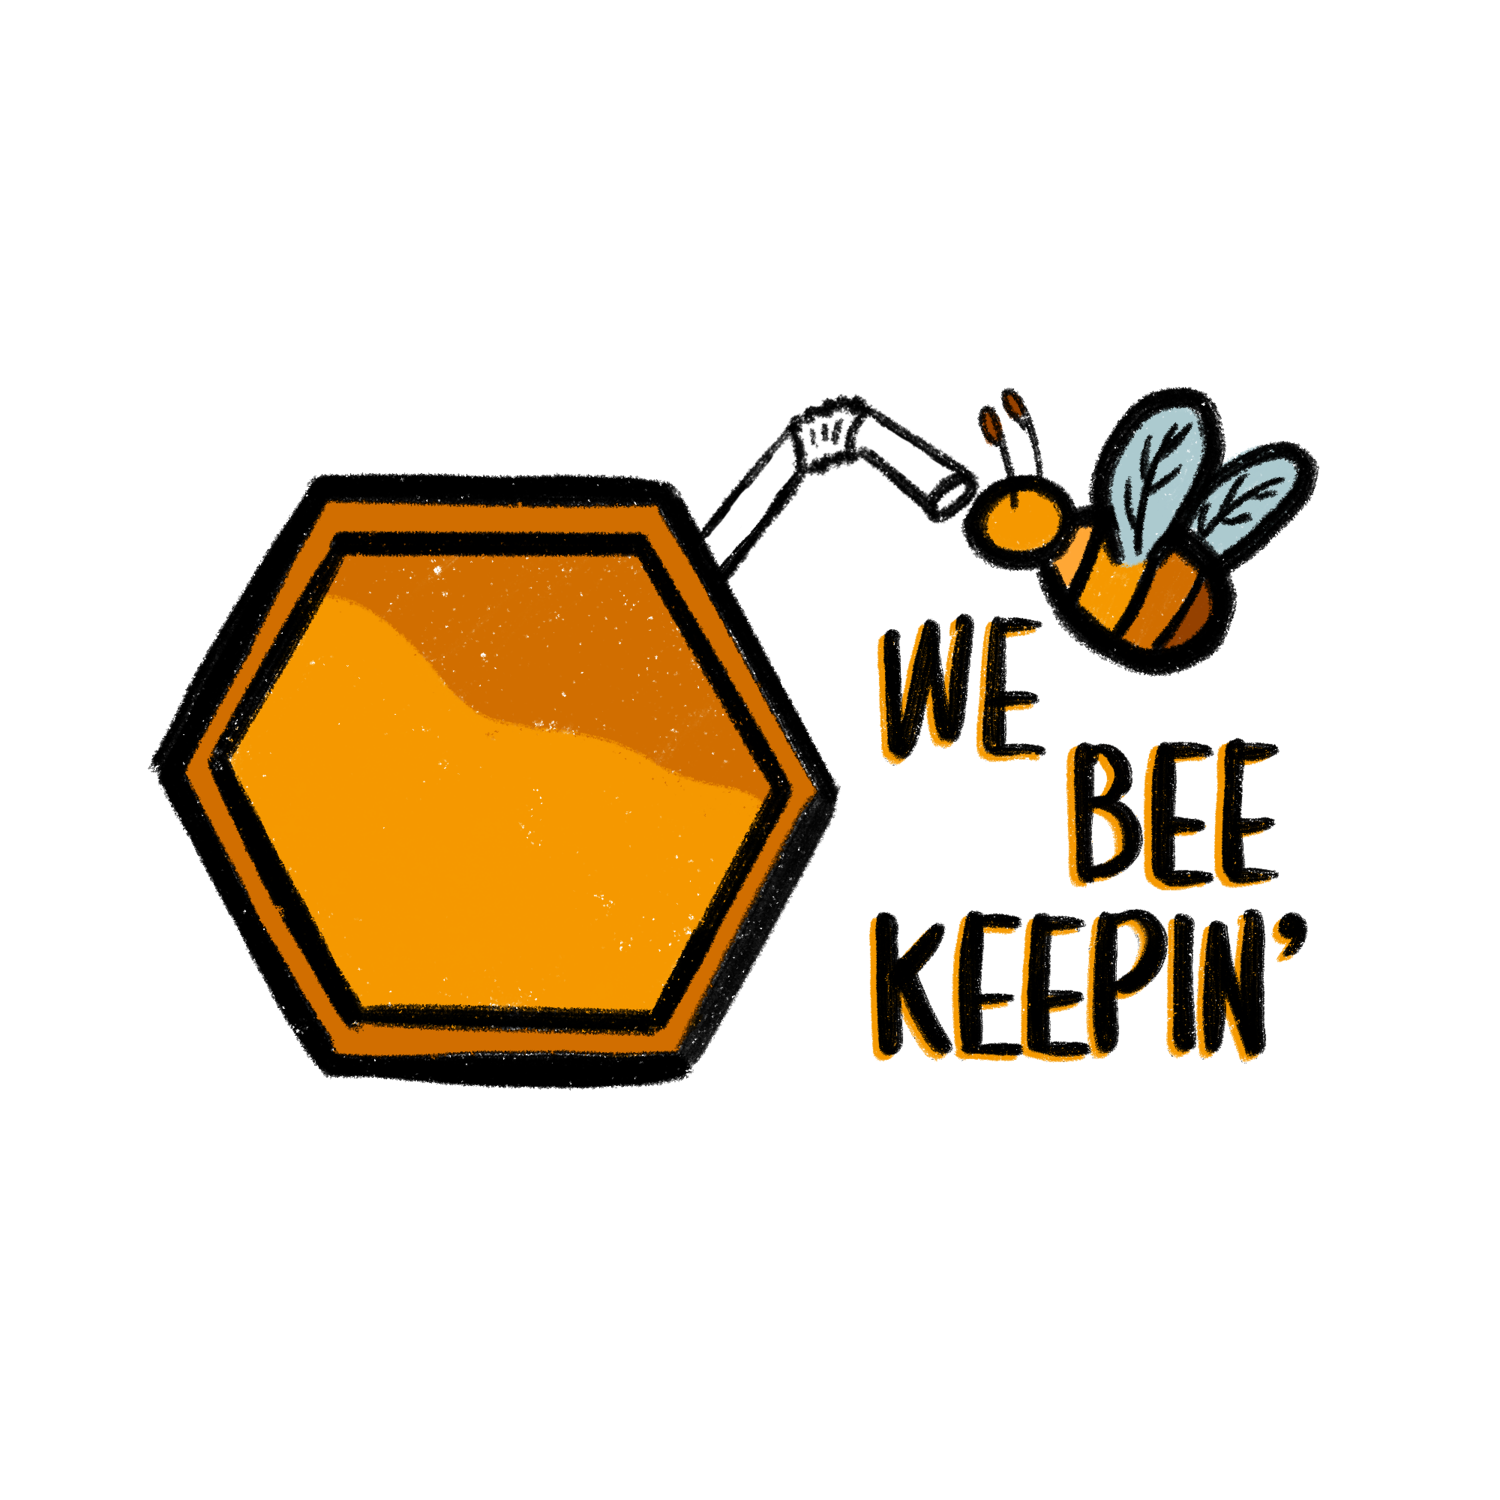  We Bee Keepin'